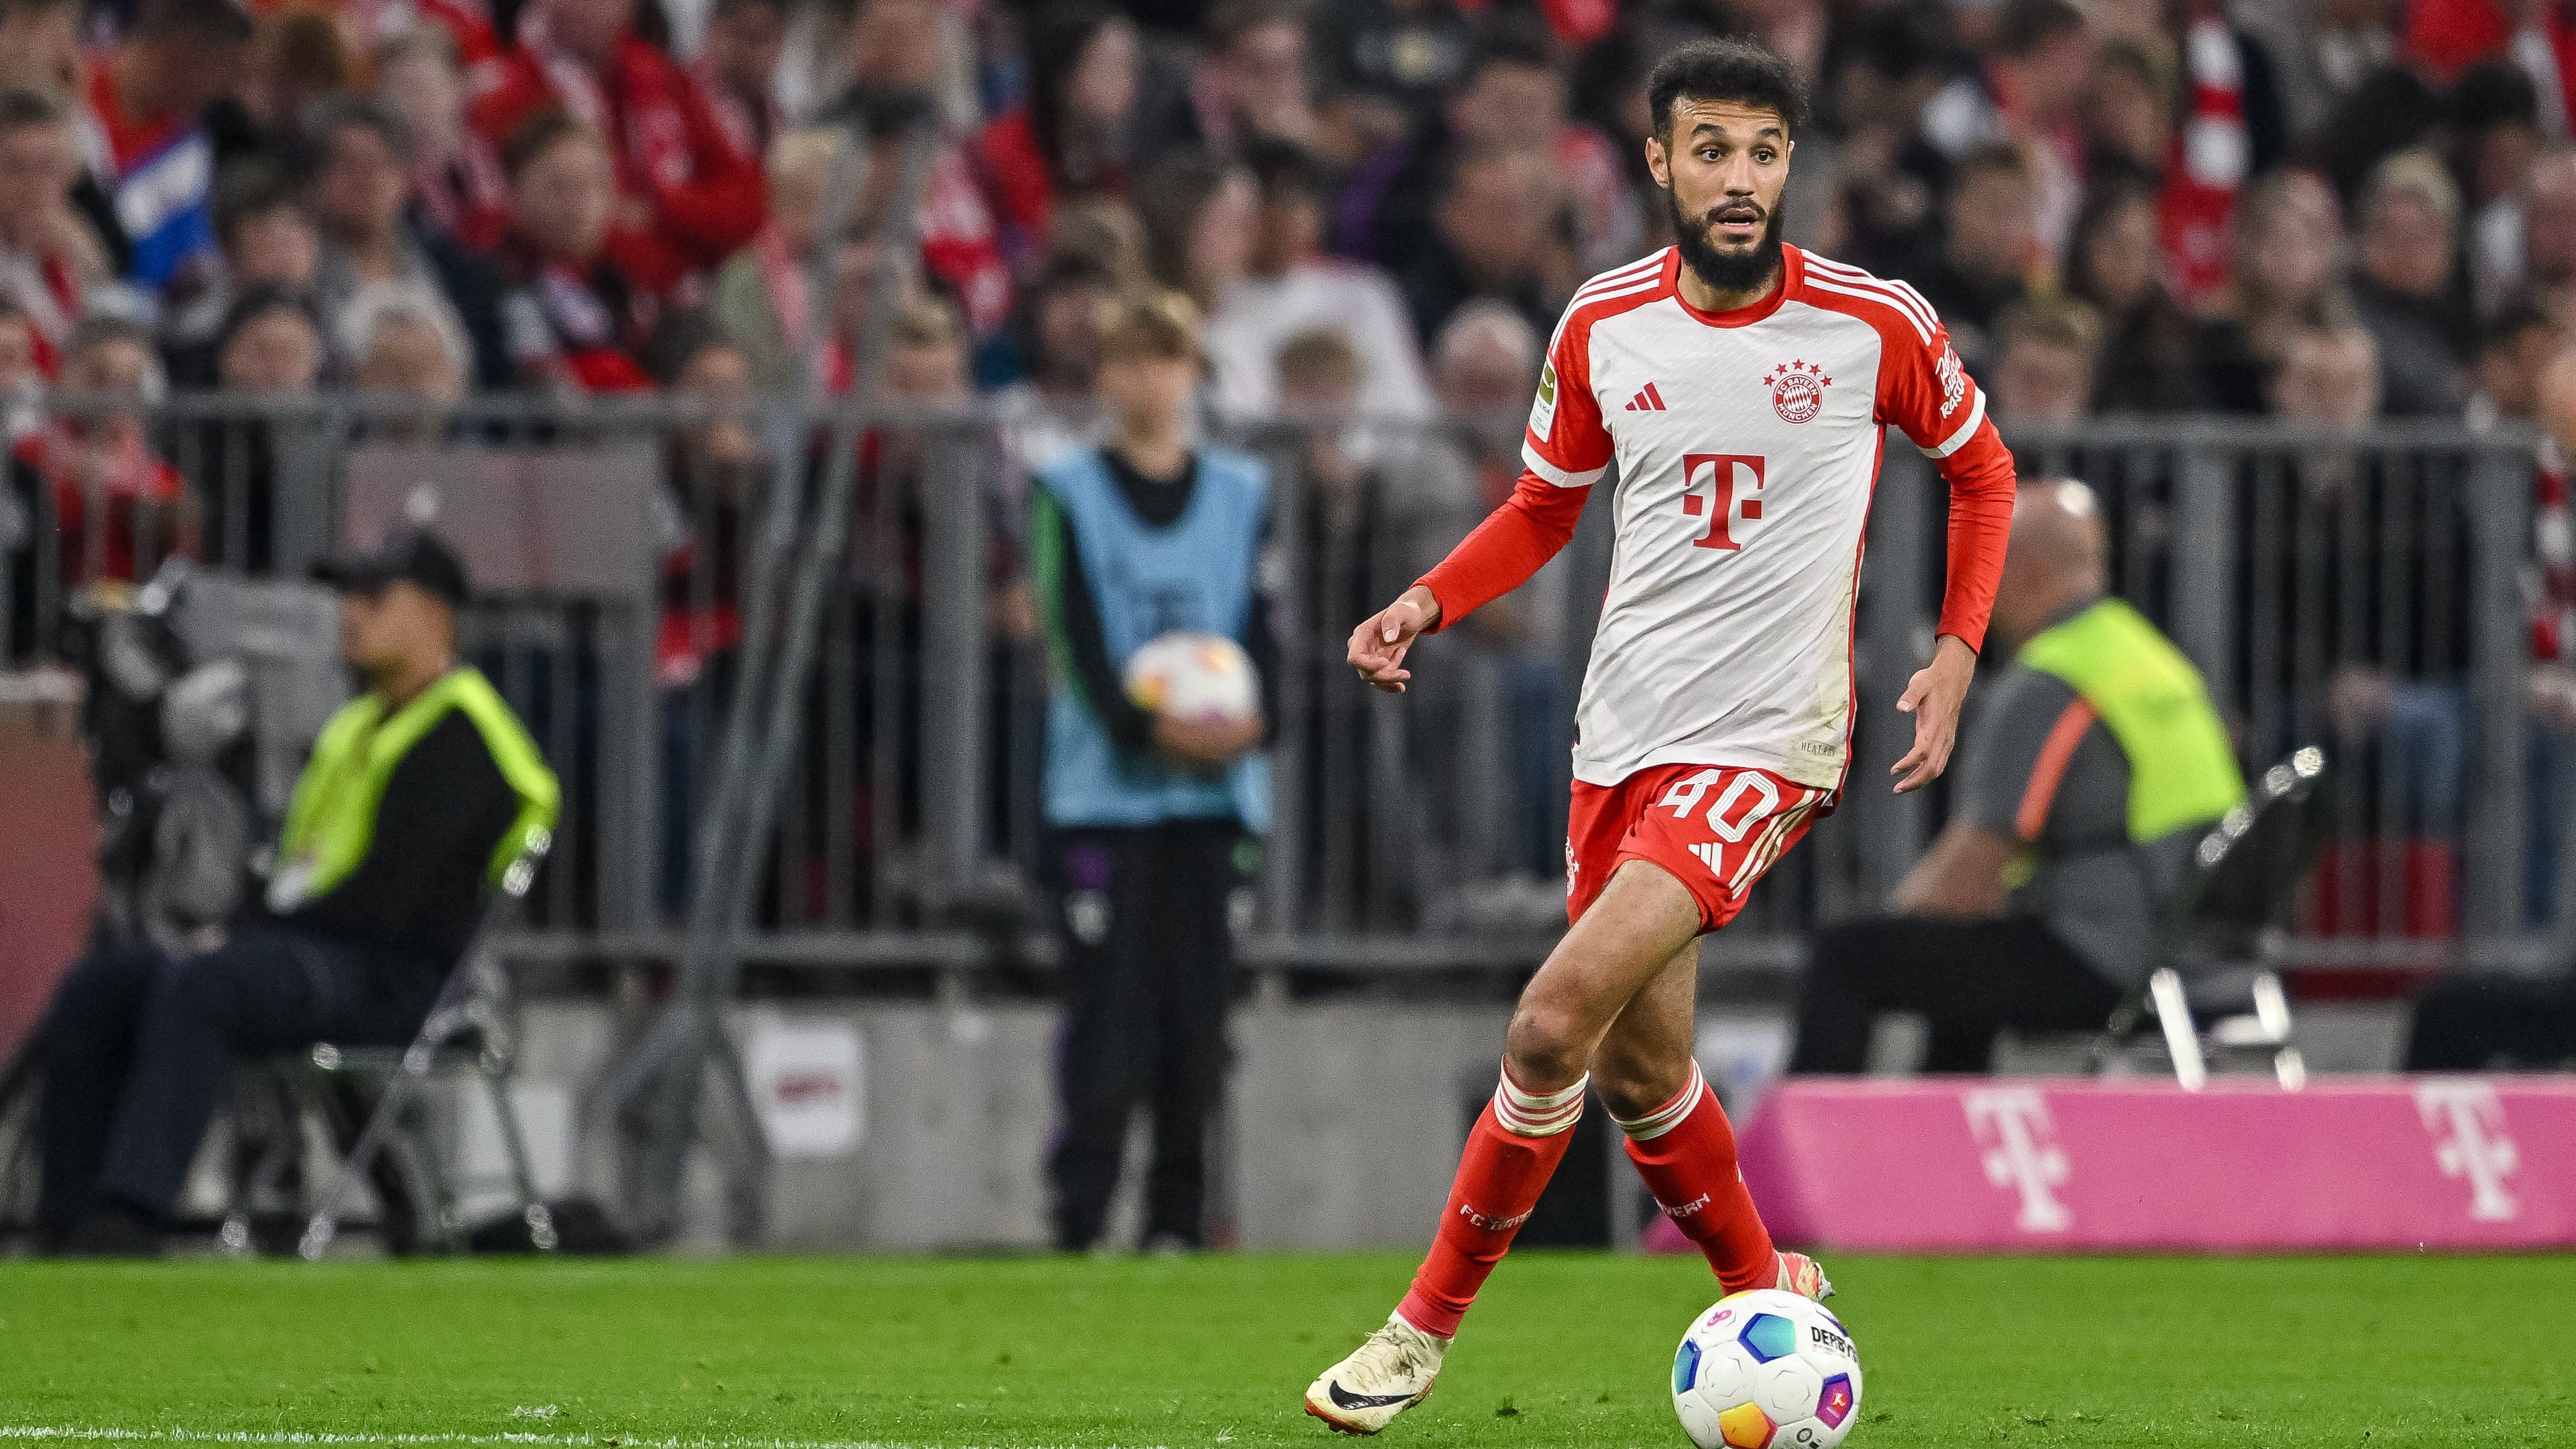 Hivatalosan egyelőre még semmit nem közölt a Bayern arról, hogy mi lesz Mazraoui sorsa a klubnál